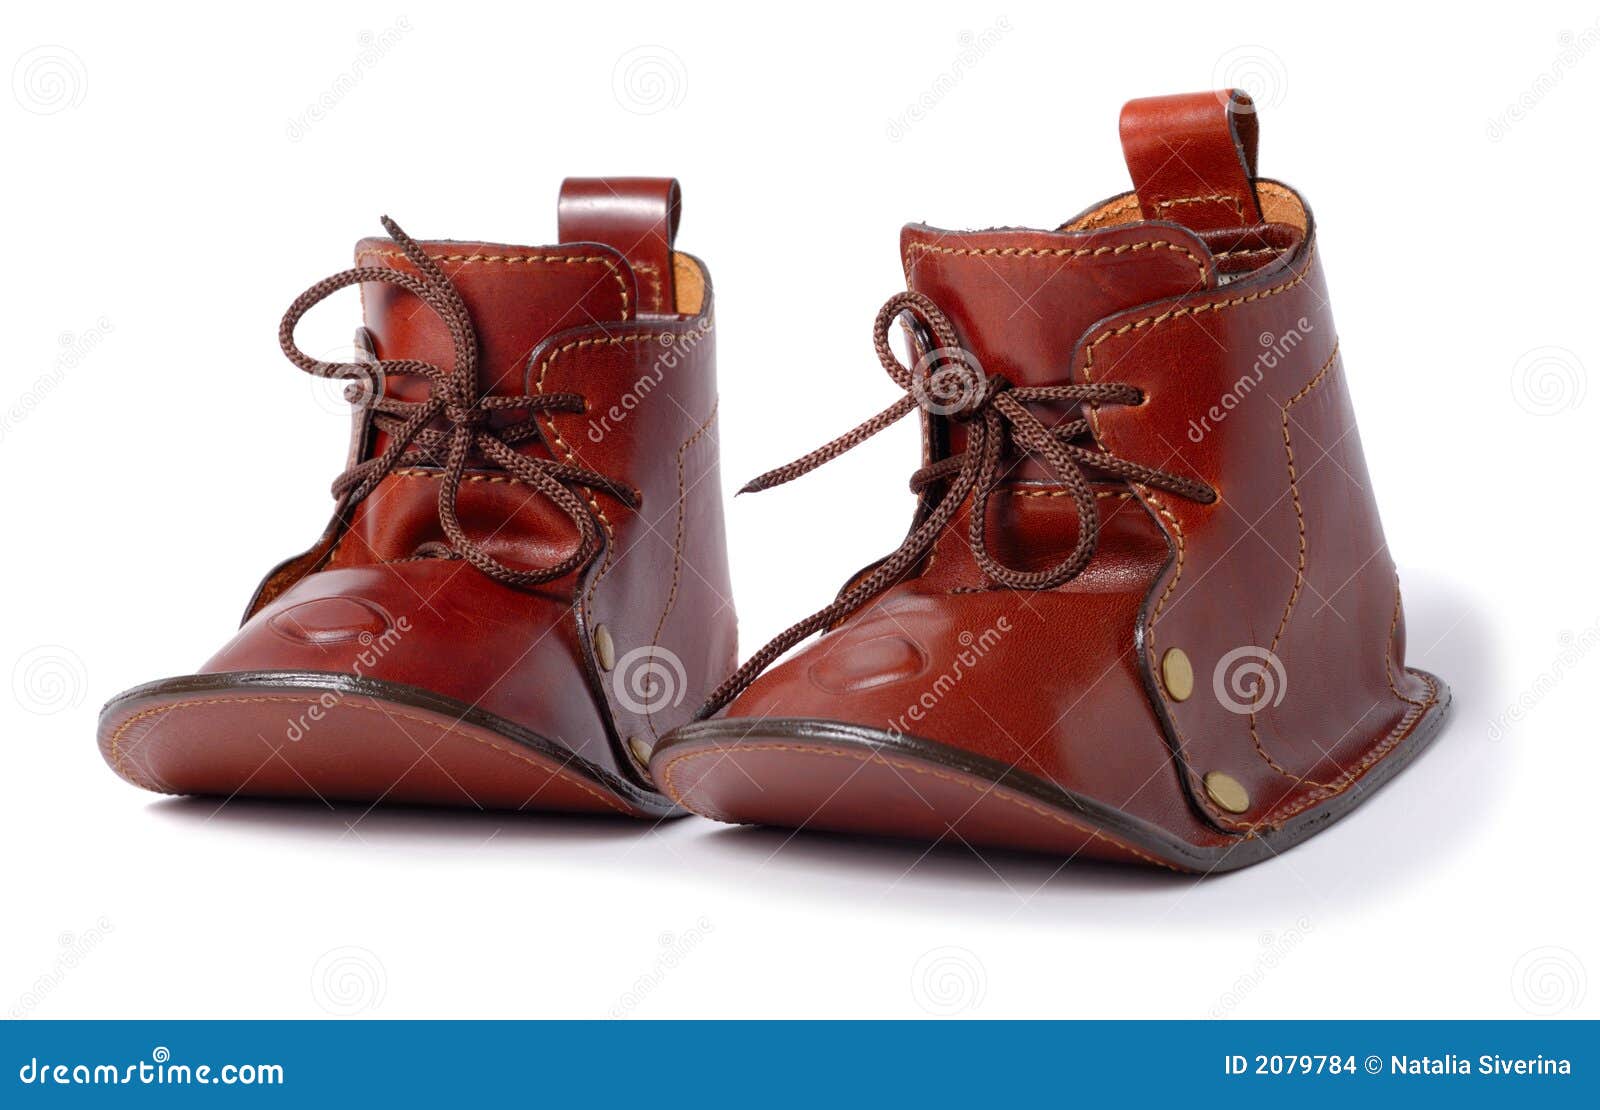 Boots любимейший gnome стоковое фото. изображение насчитывающей шнурки -2079784